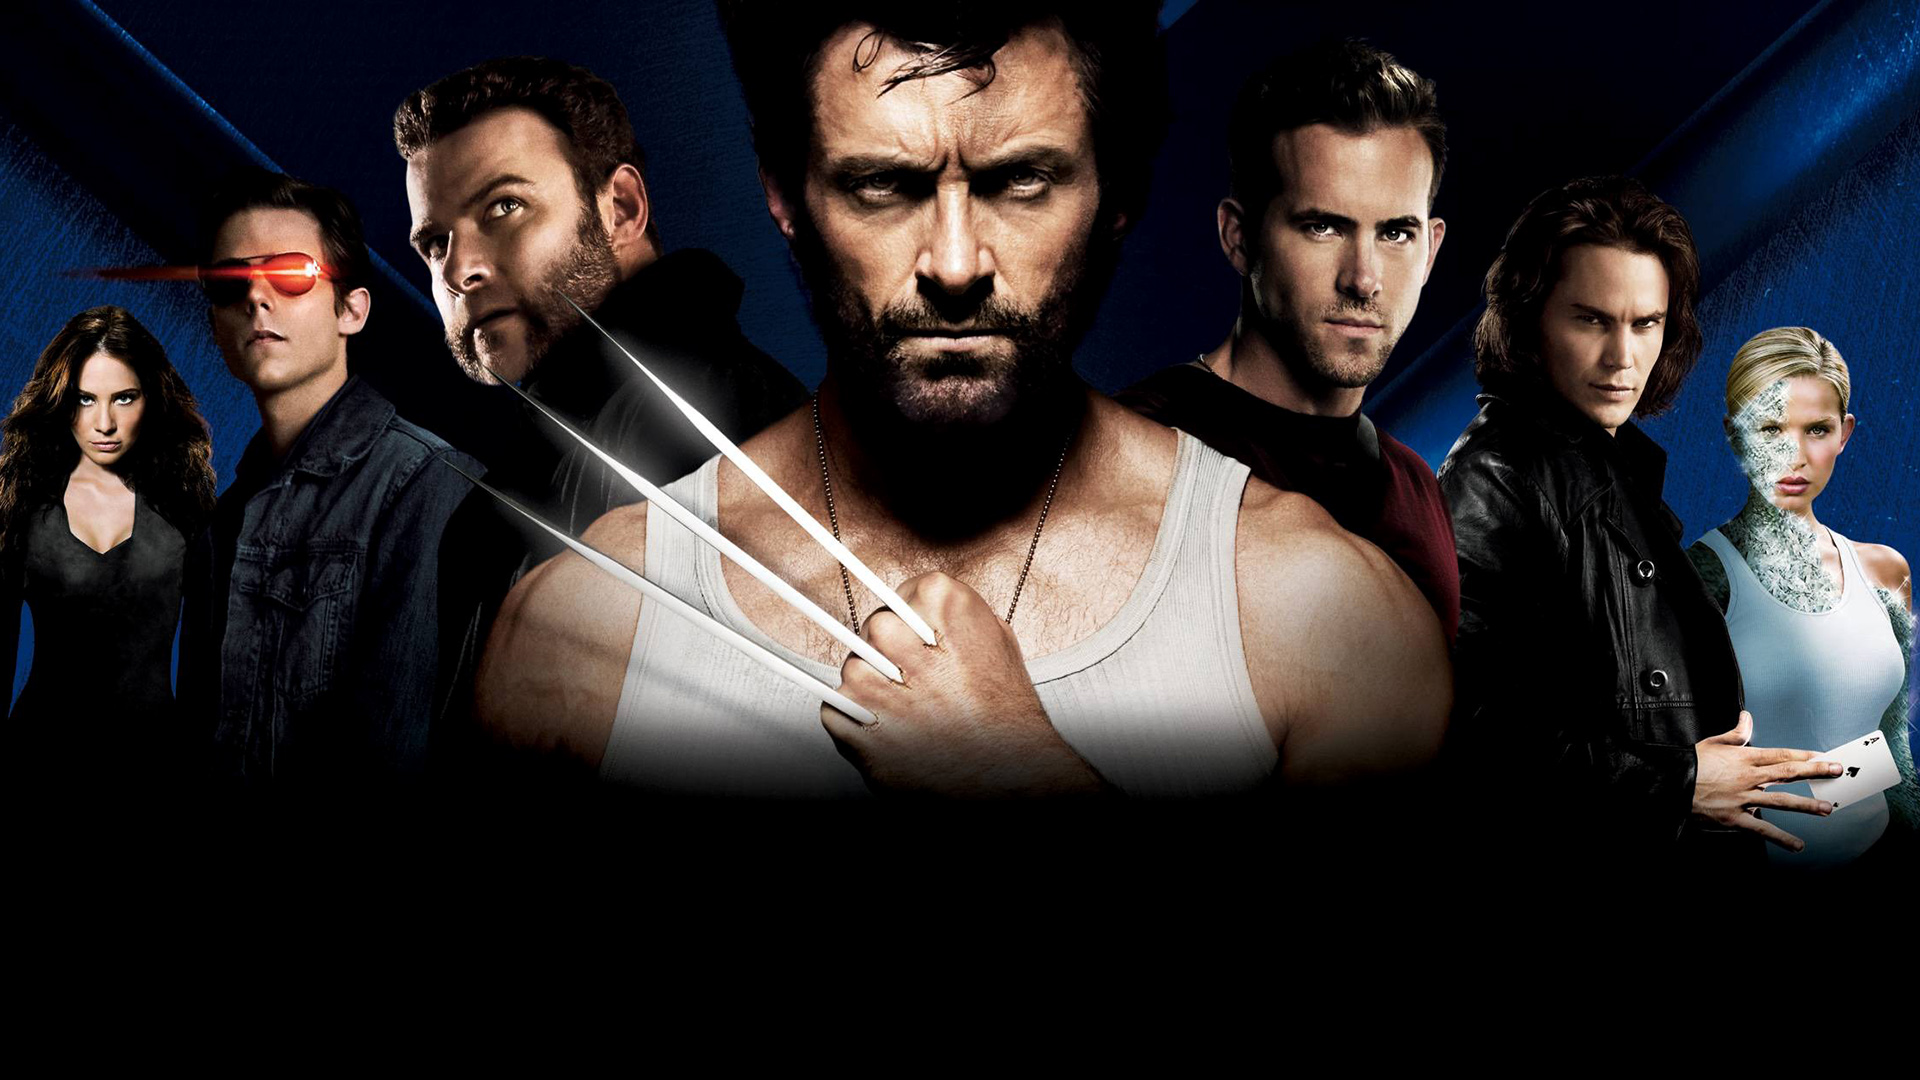 Movie X-Men Origins: Wolverine HD Wallpaper | Background Image